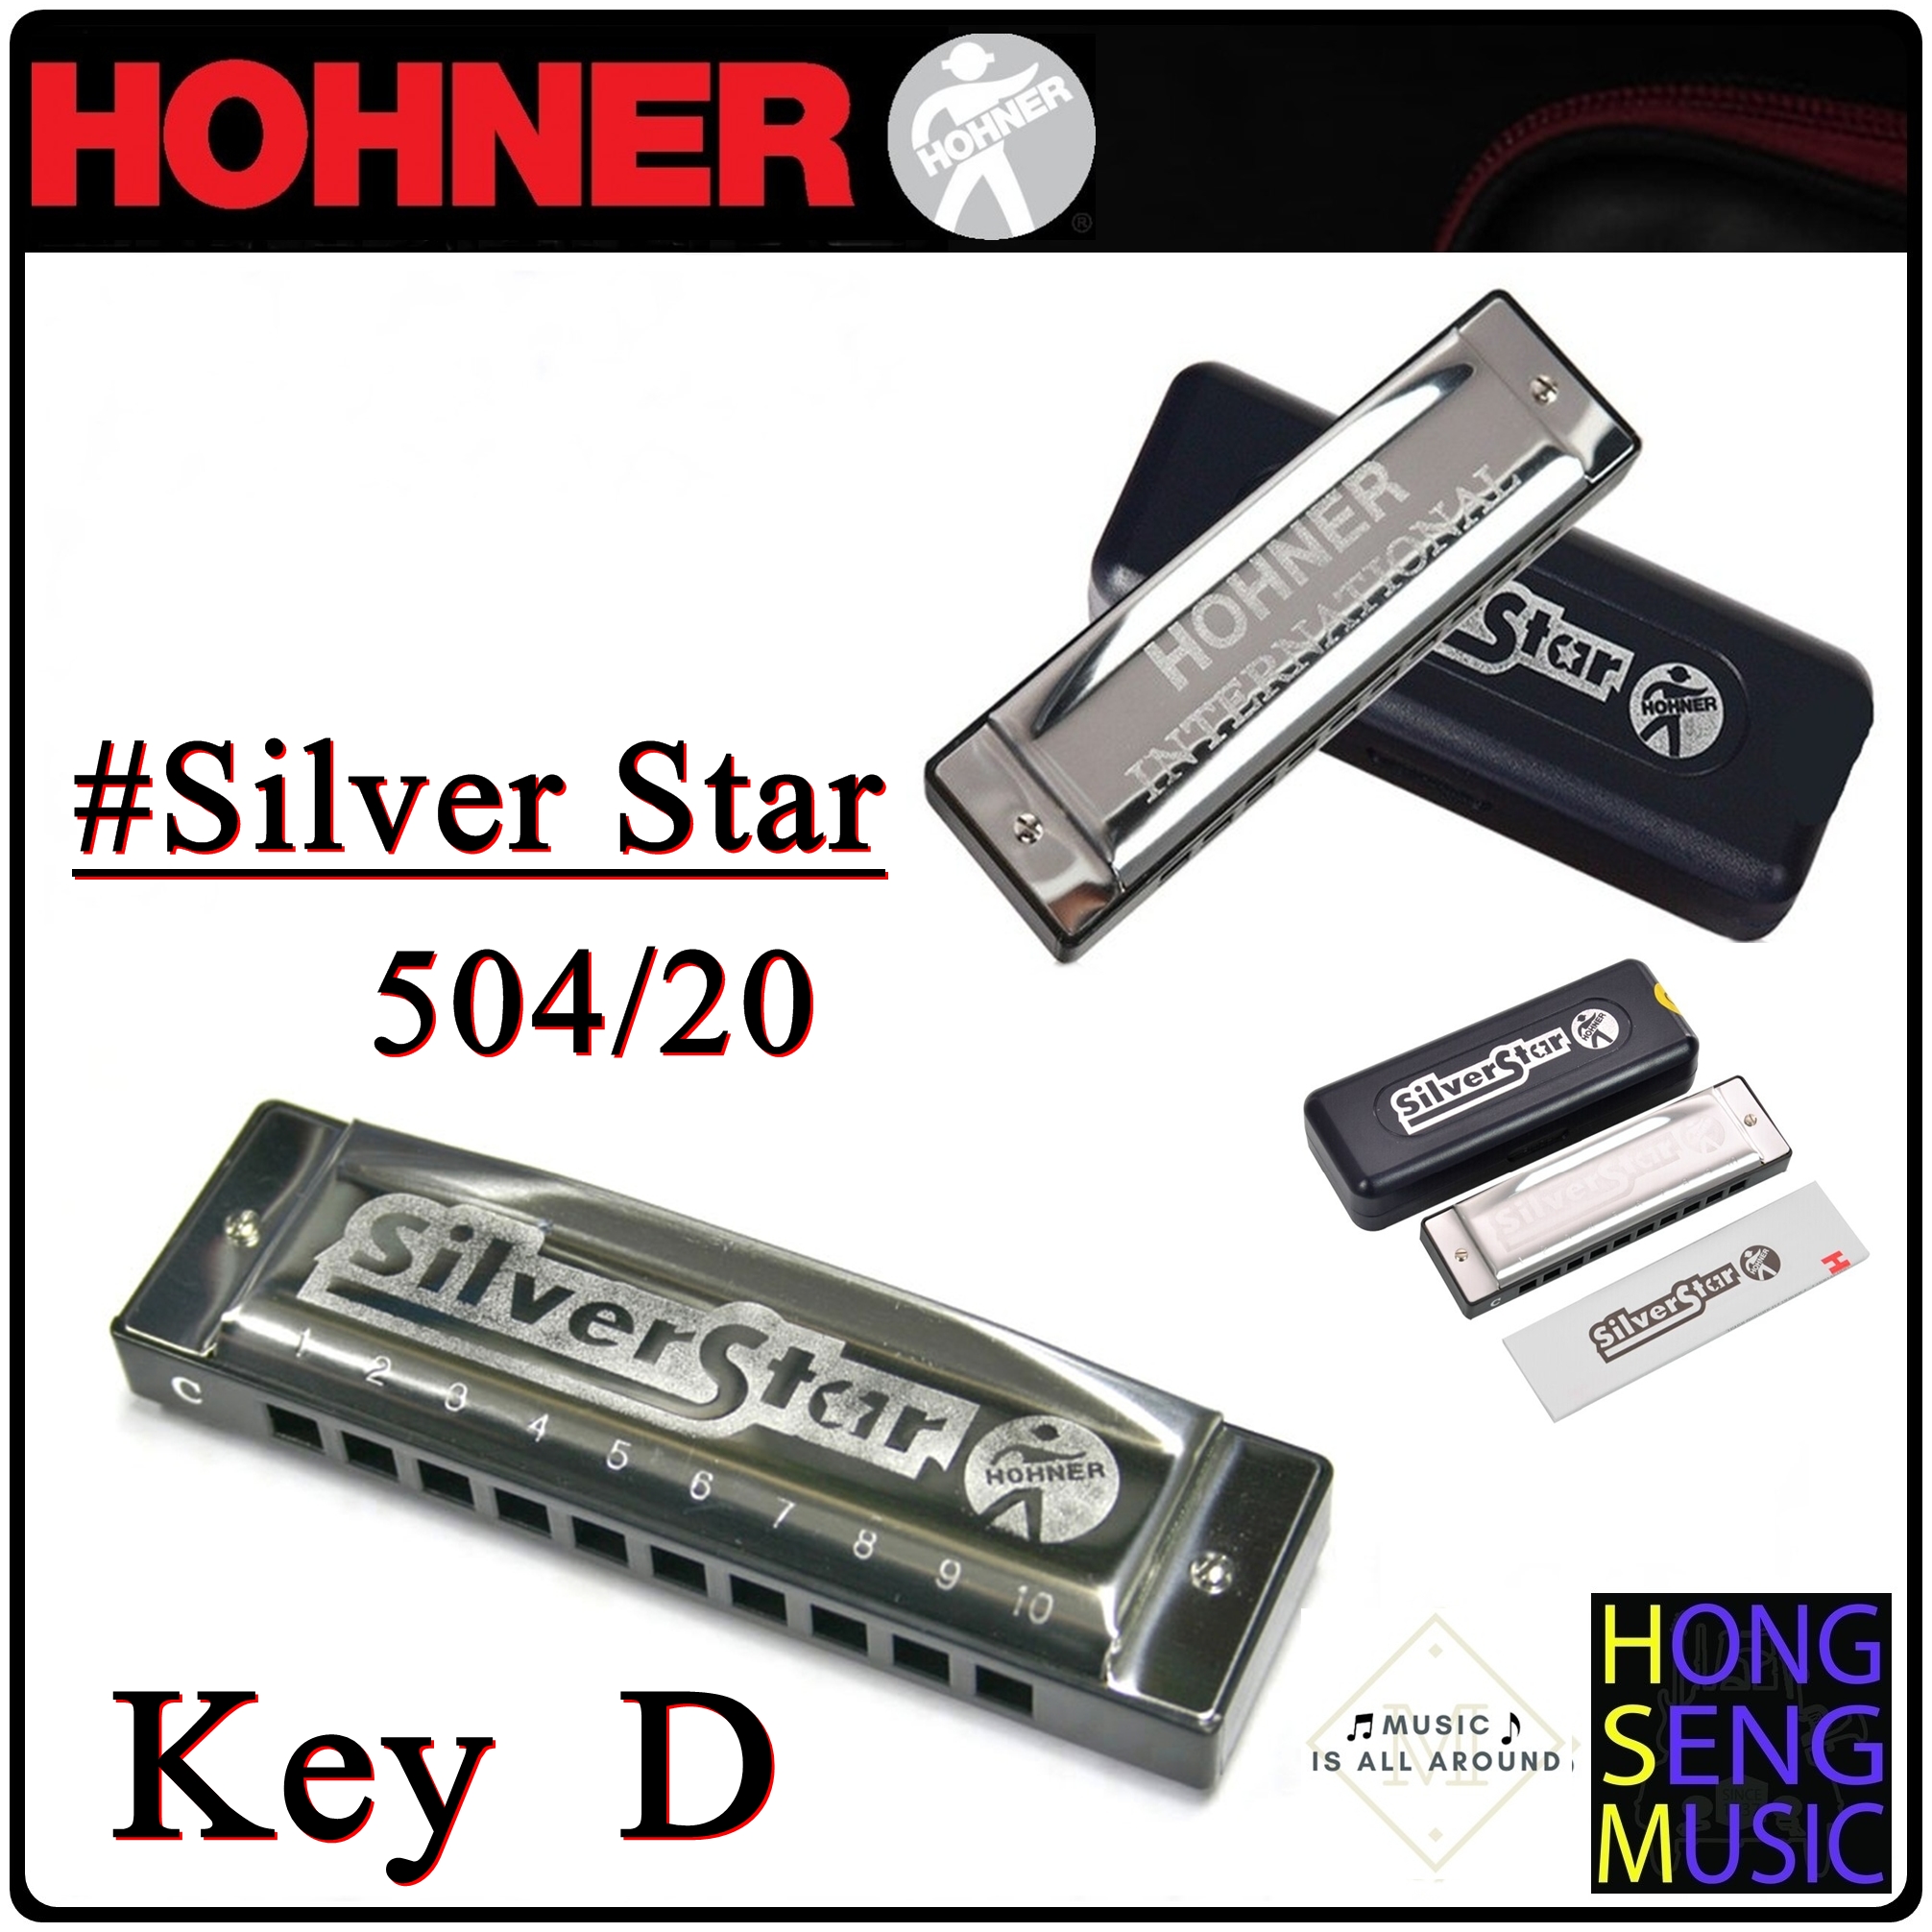 ฮาร์โมนิก้า (เม้าท์ออร์แกน) Hohner รุ่น Silver Star Harmonica 504/20 Key D